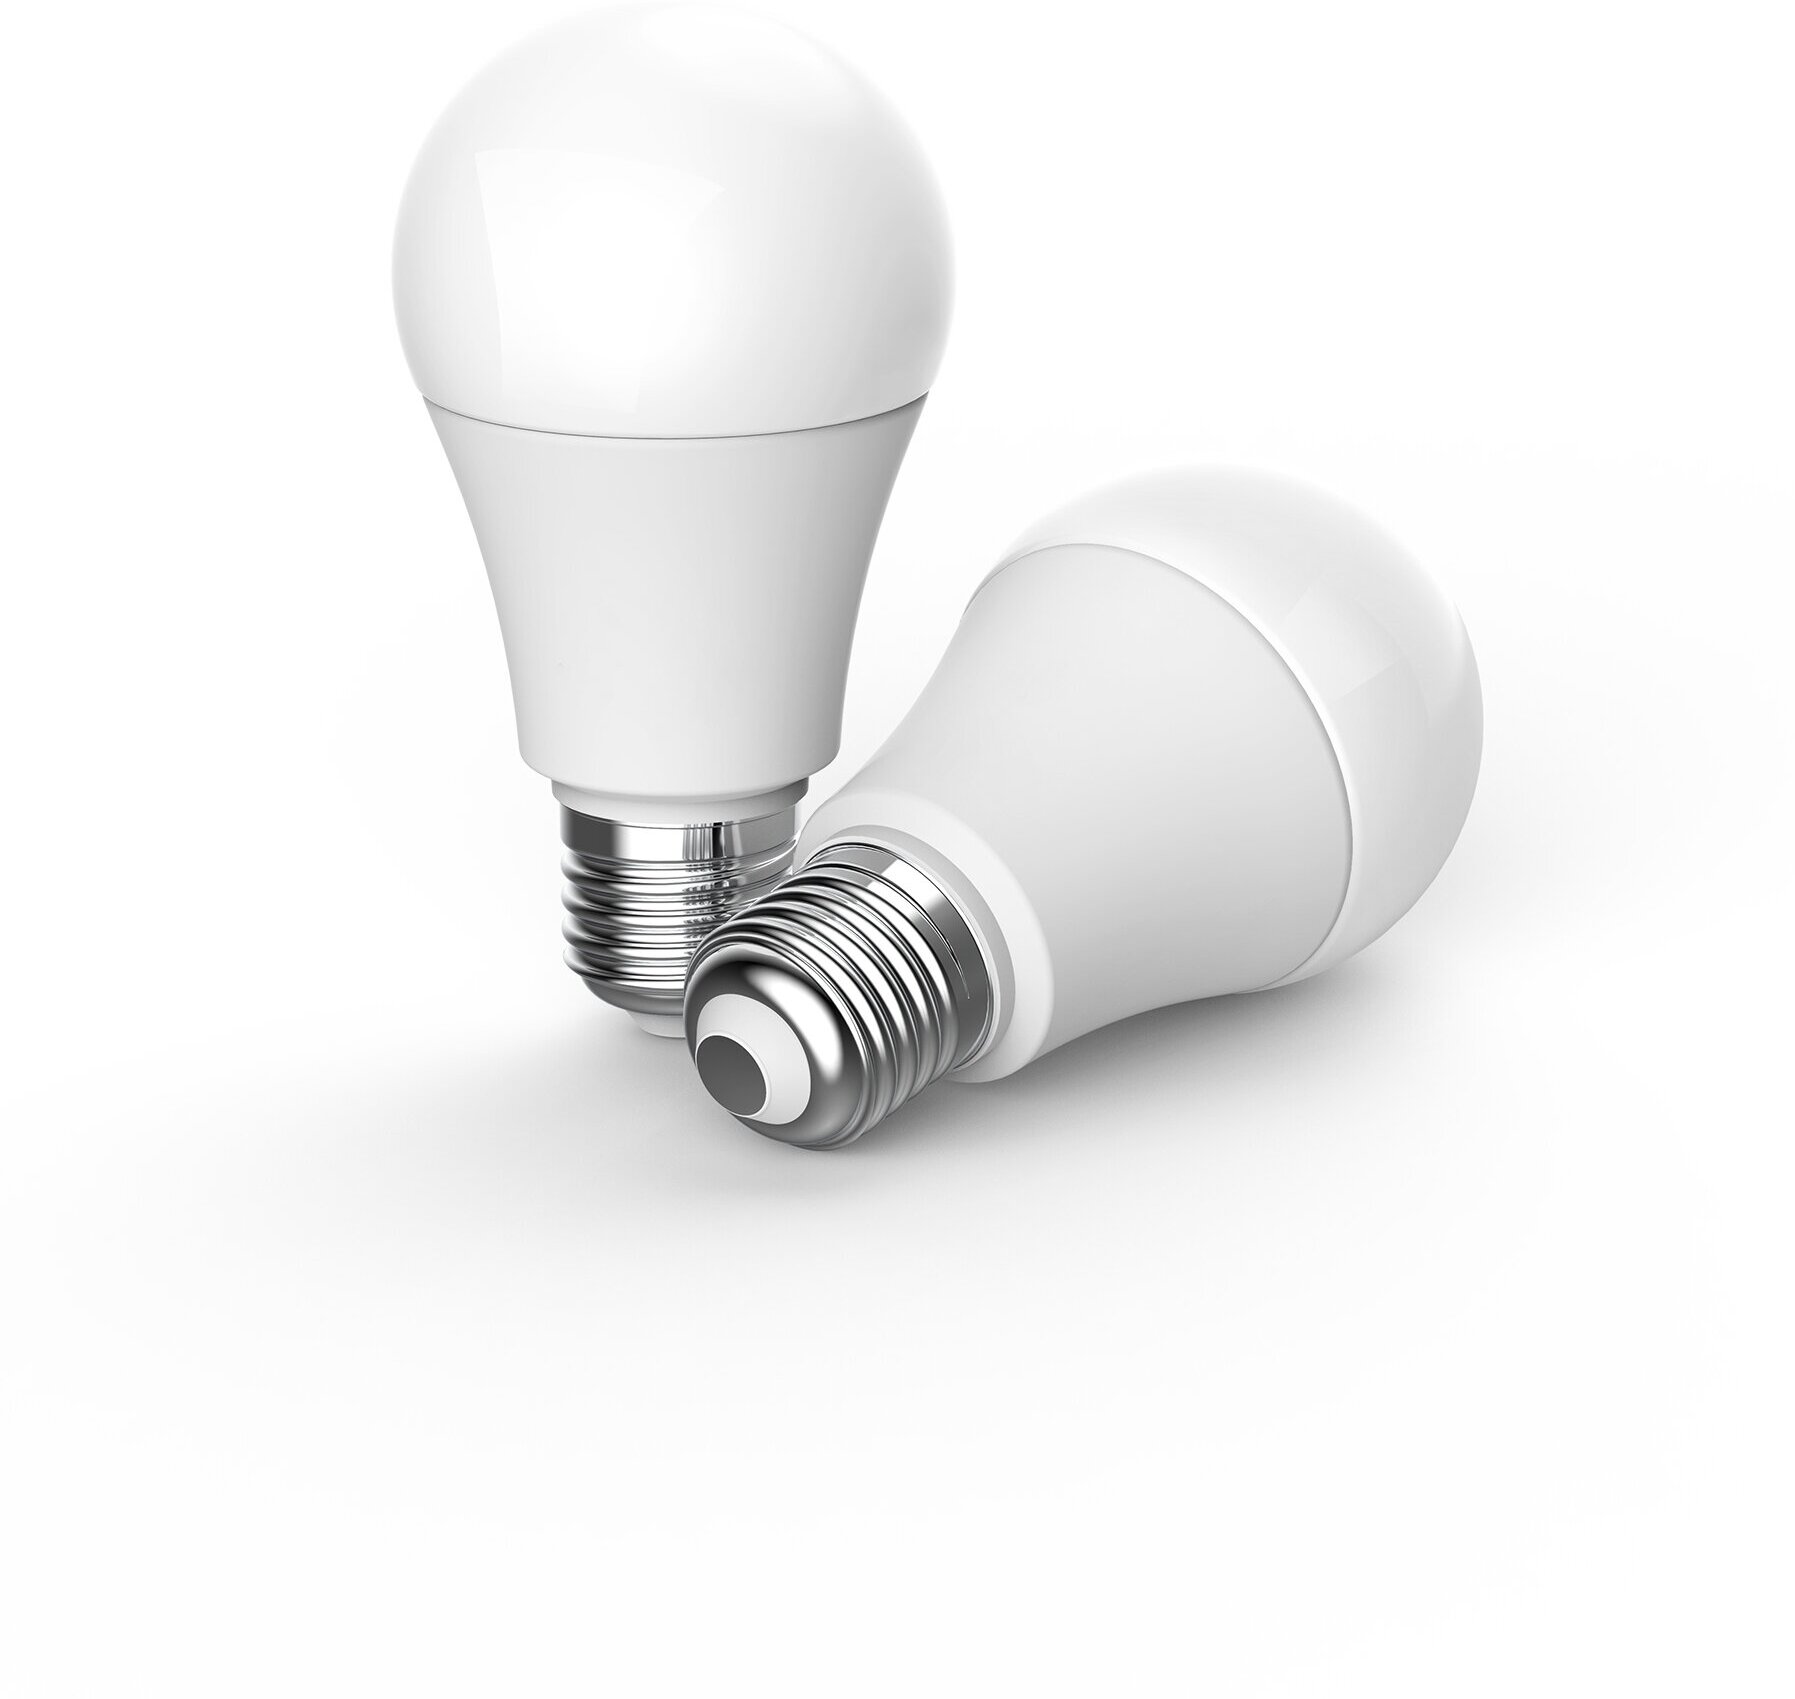 Умная лампа Aqara Light Bulb T1 E27 8.5Вт 806lm (LEDLBT1-L01)